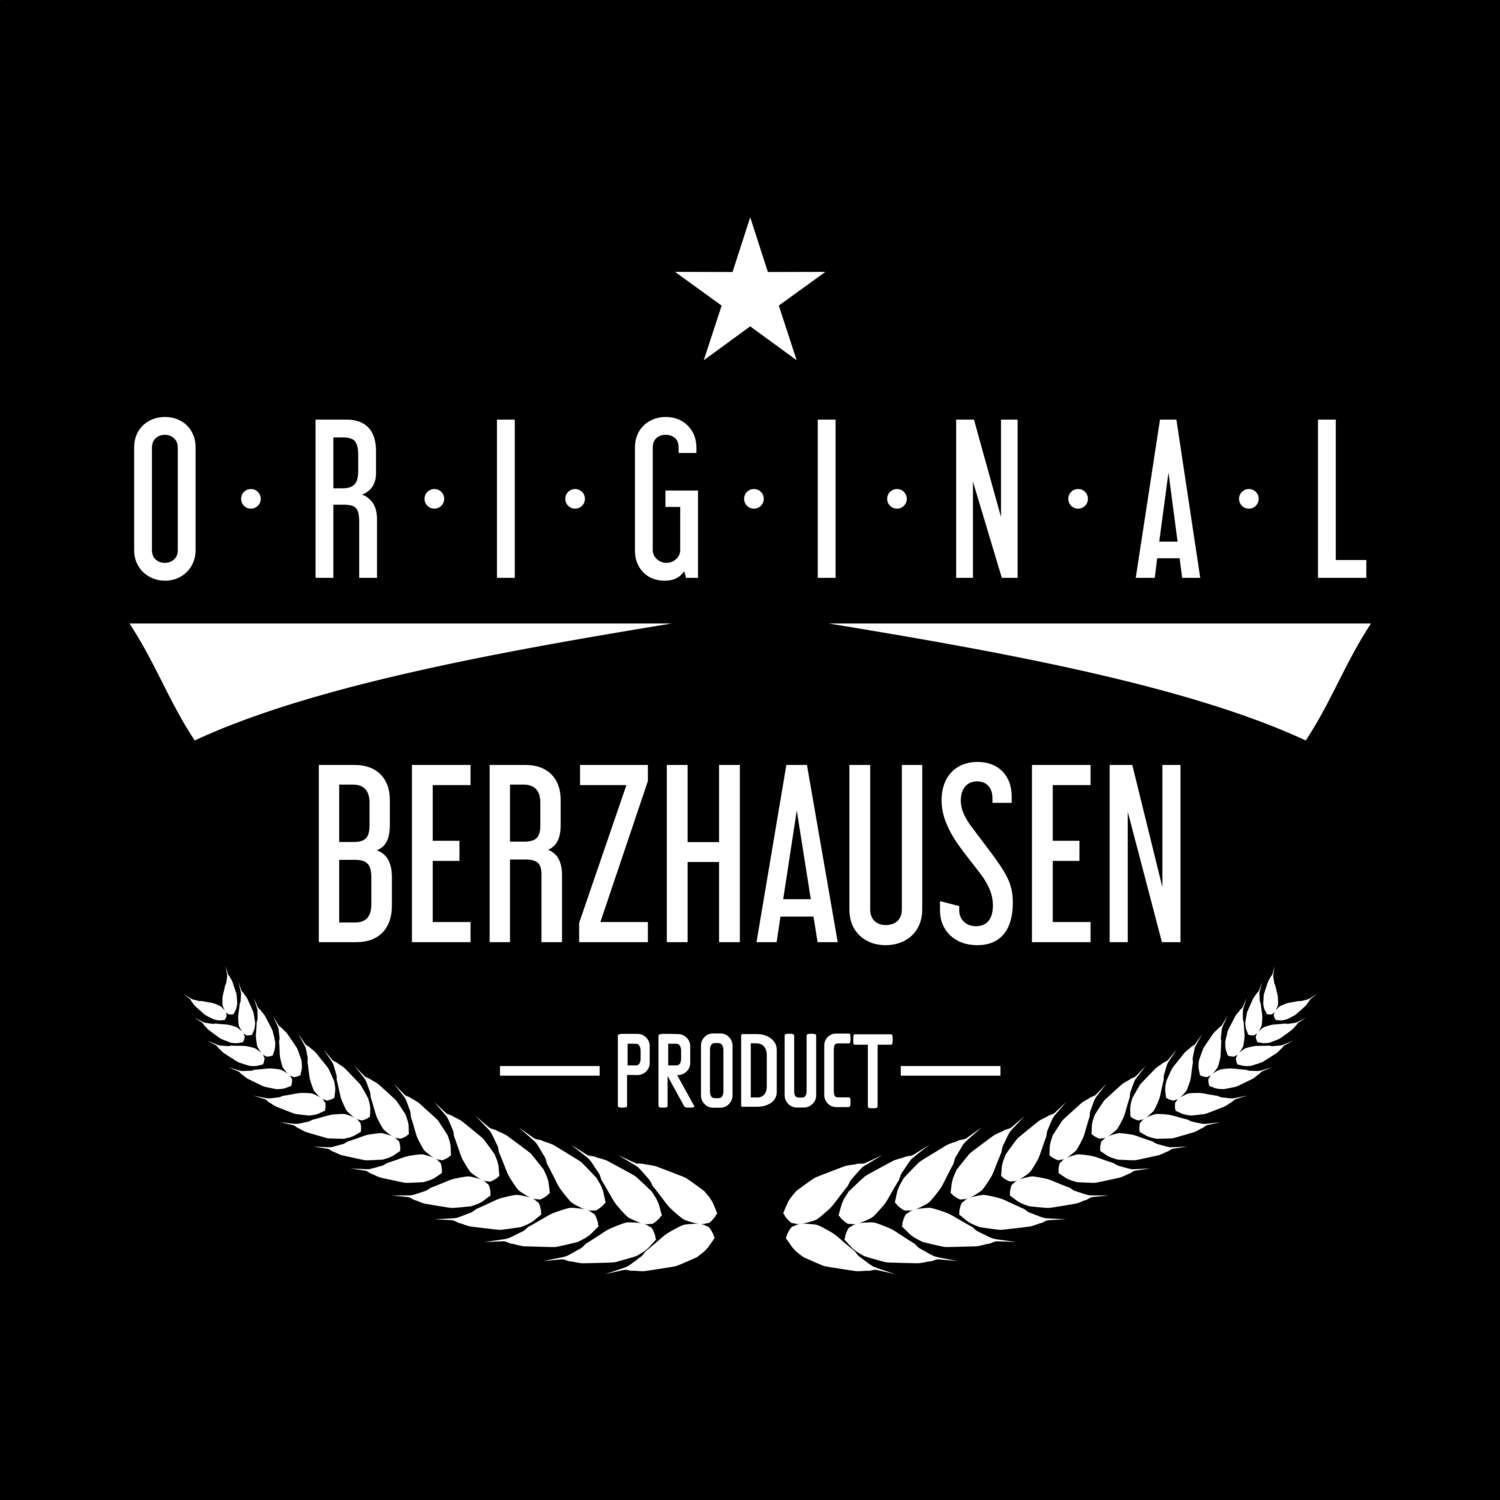 Berzhausen T-Shirt »Original Product«